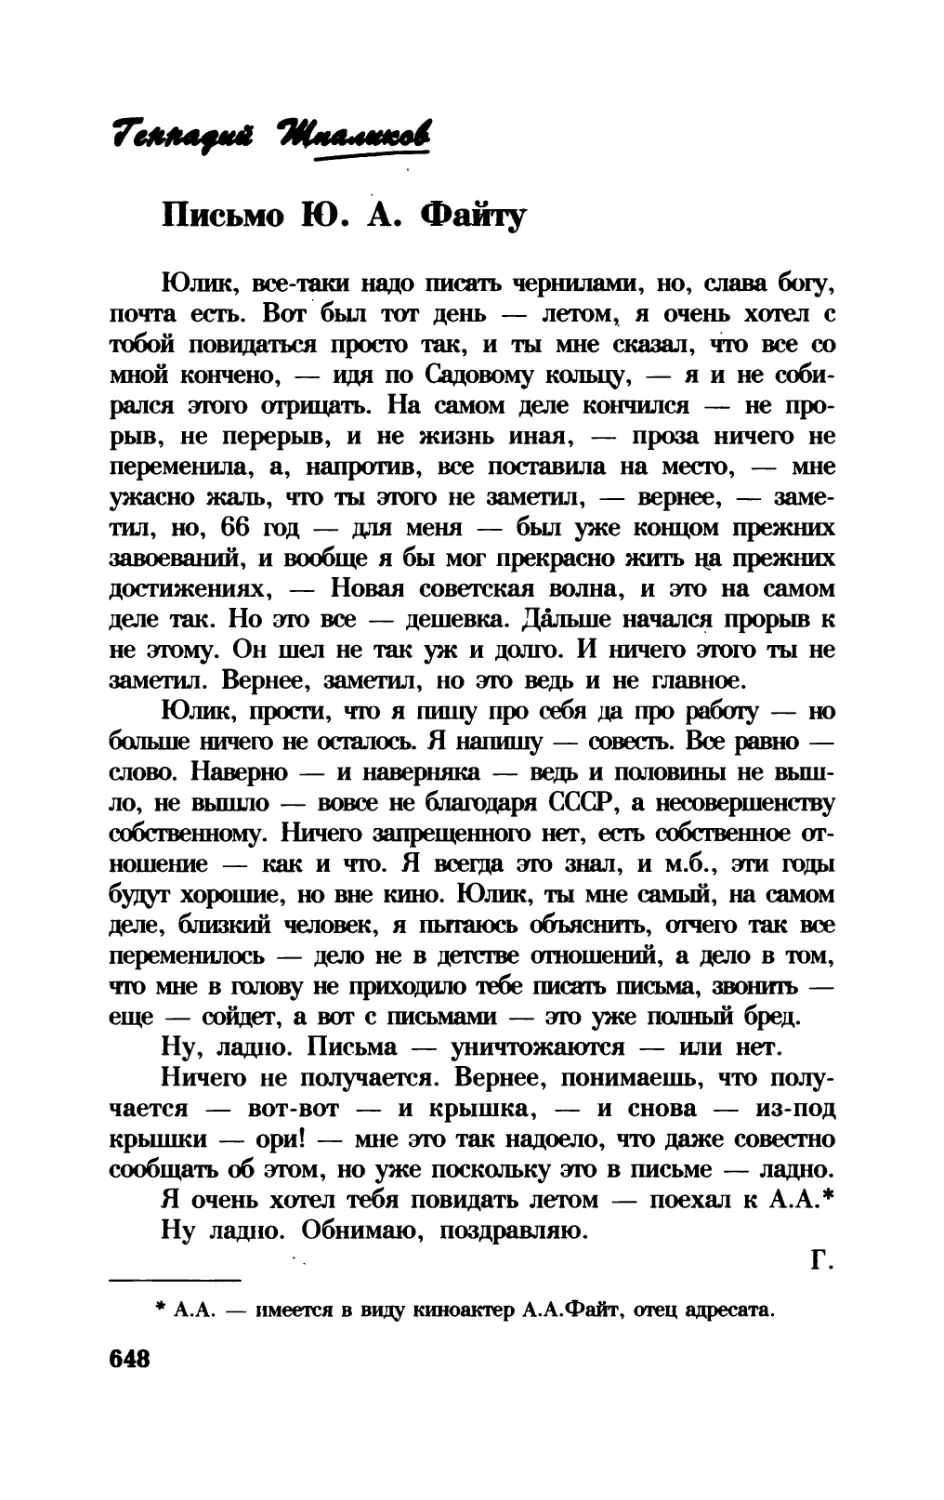 Письмо Ю.А. Файту